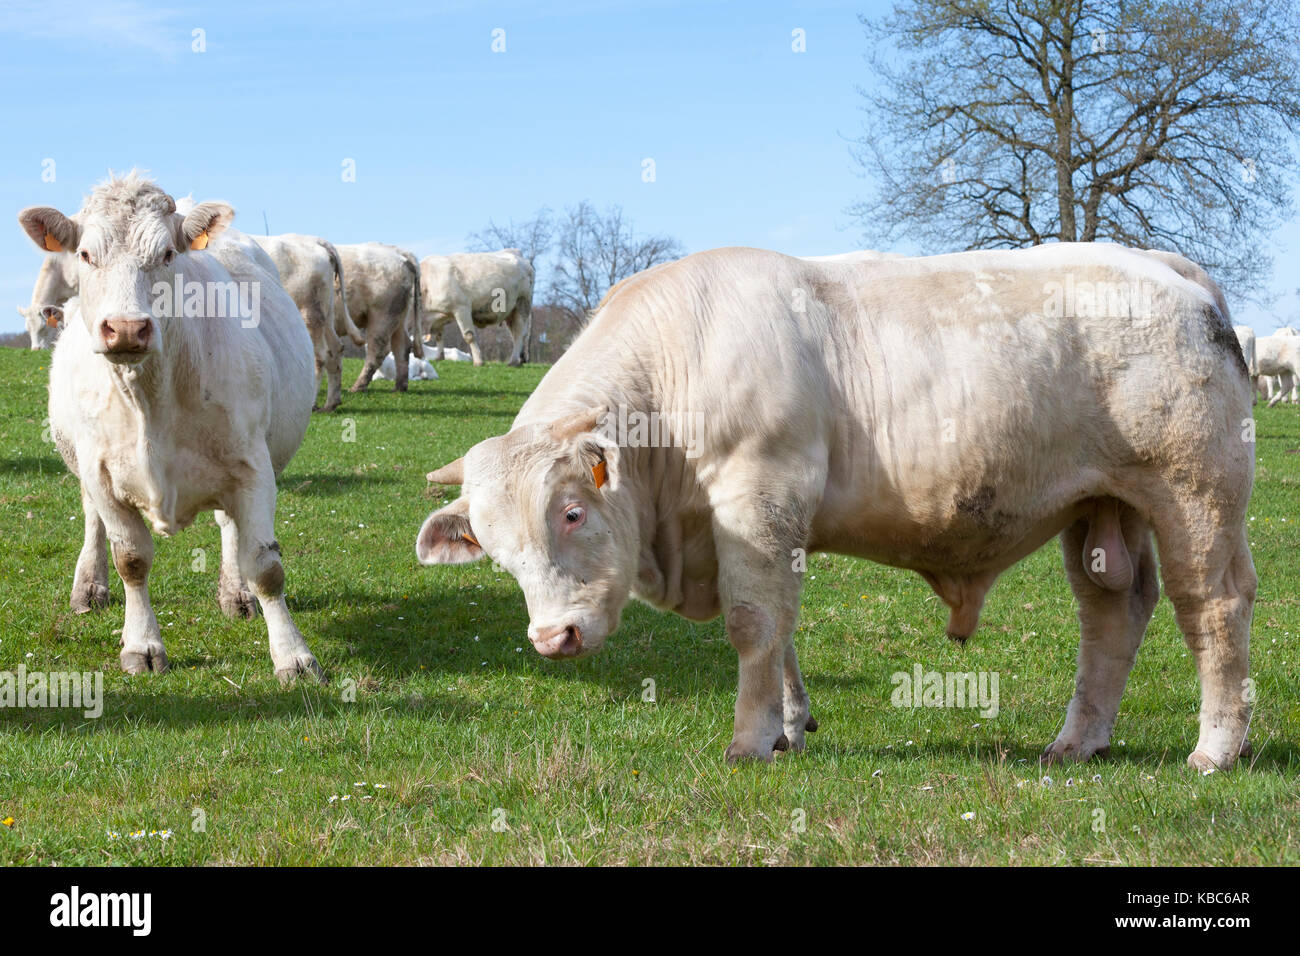 Neugierig weiß Charolais-rind Stier und Kuh grasen in einer üppigen Feder Weide mit den anderen catlle in der Herde hinter Ihnen in der Nähe zu sehen. Stockfoto